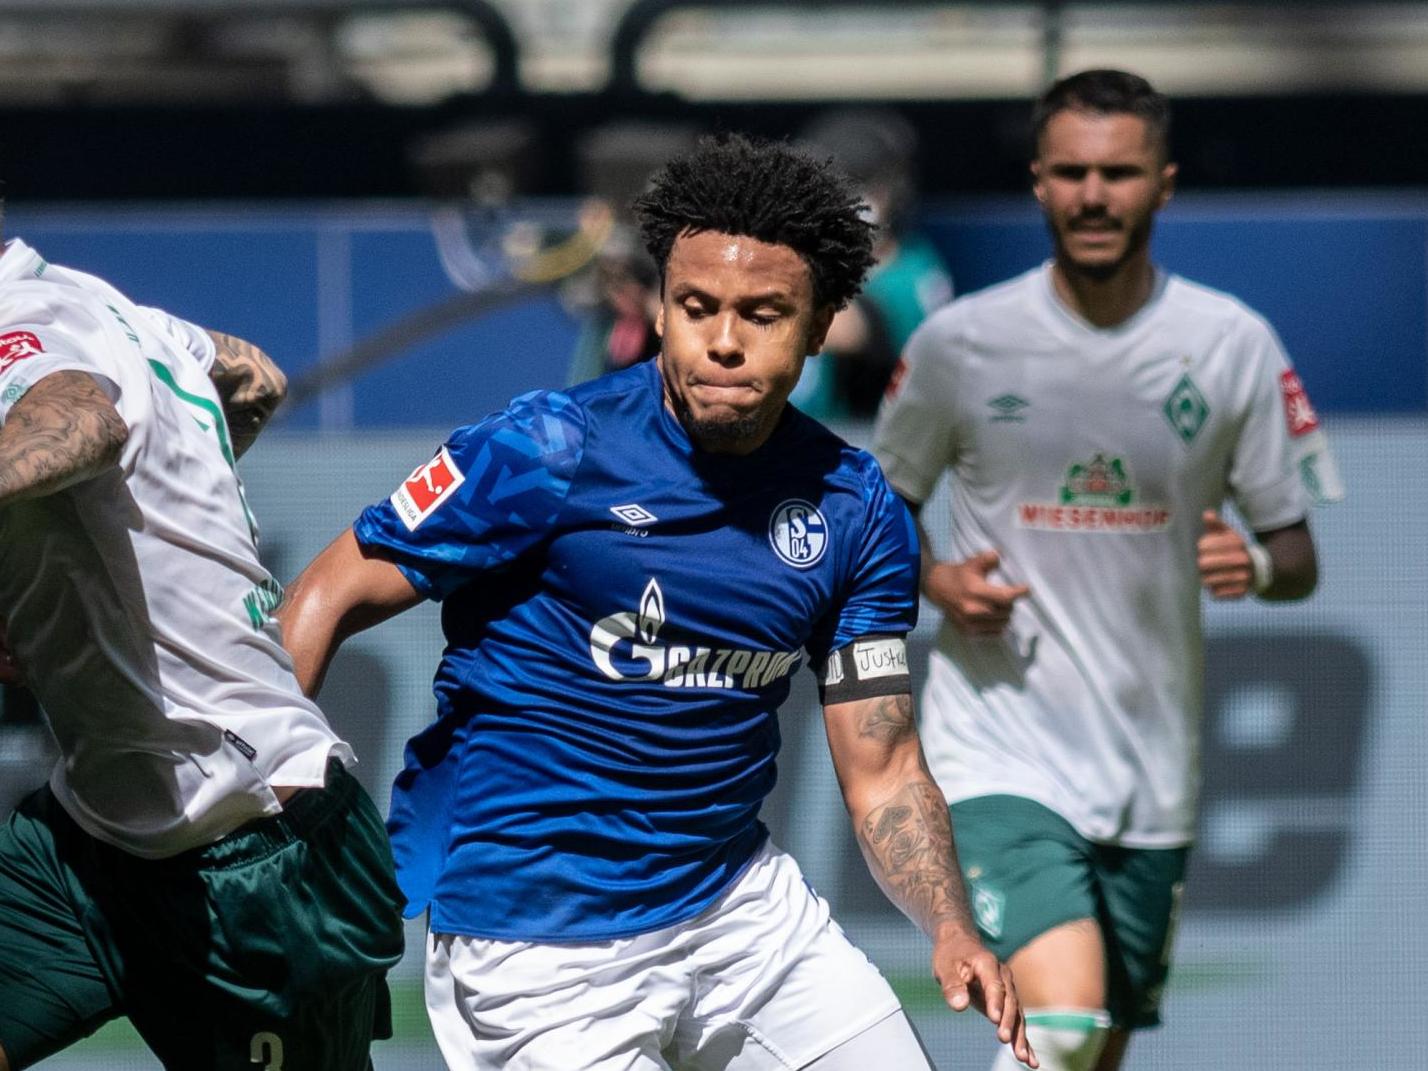 Weston McKennie plays for Bundesliga side Schalke at club level